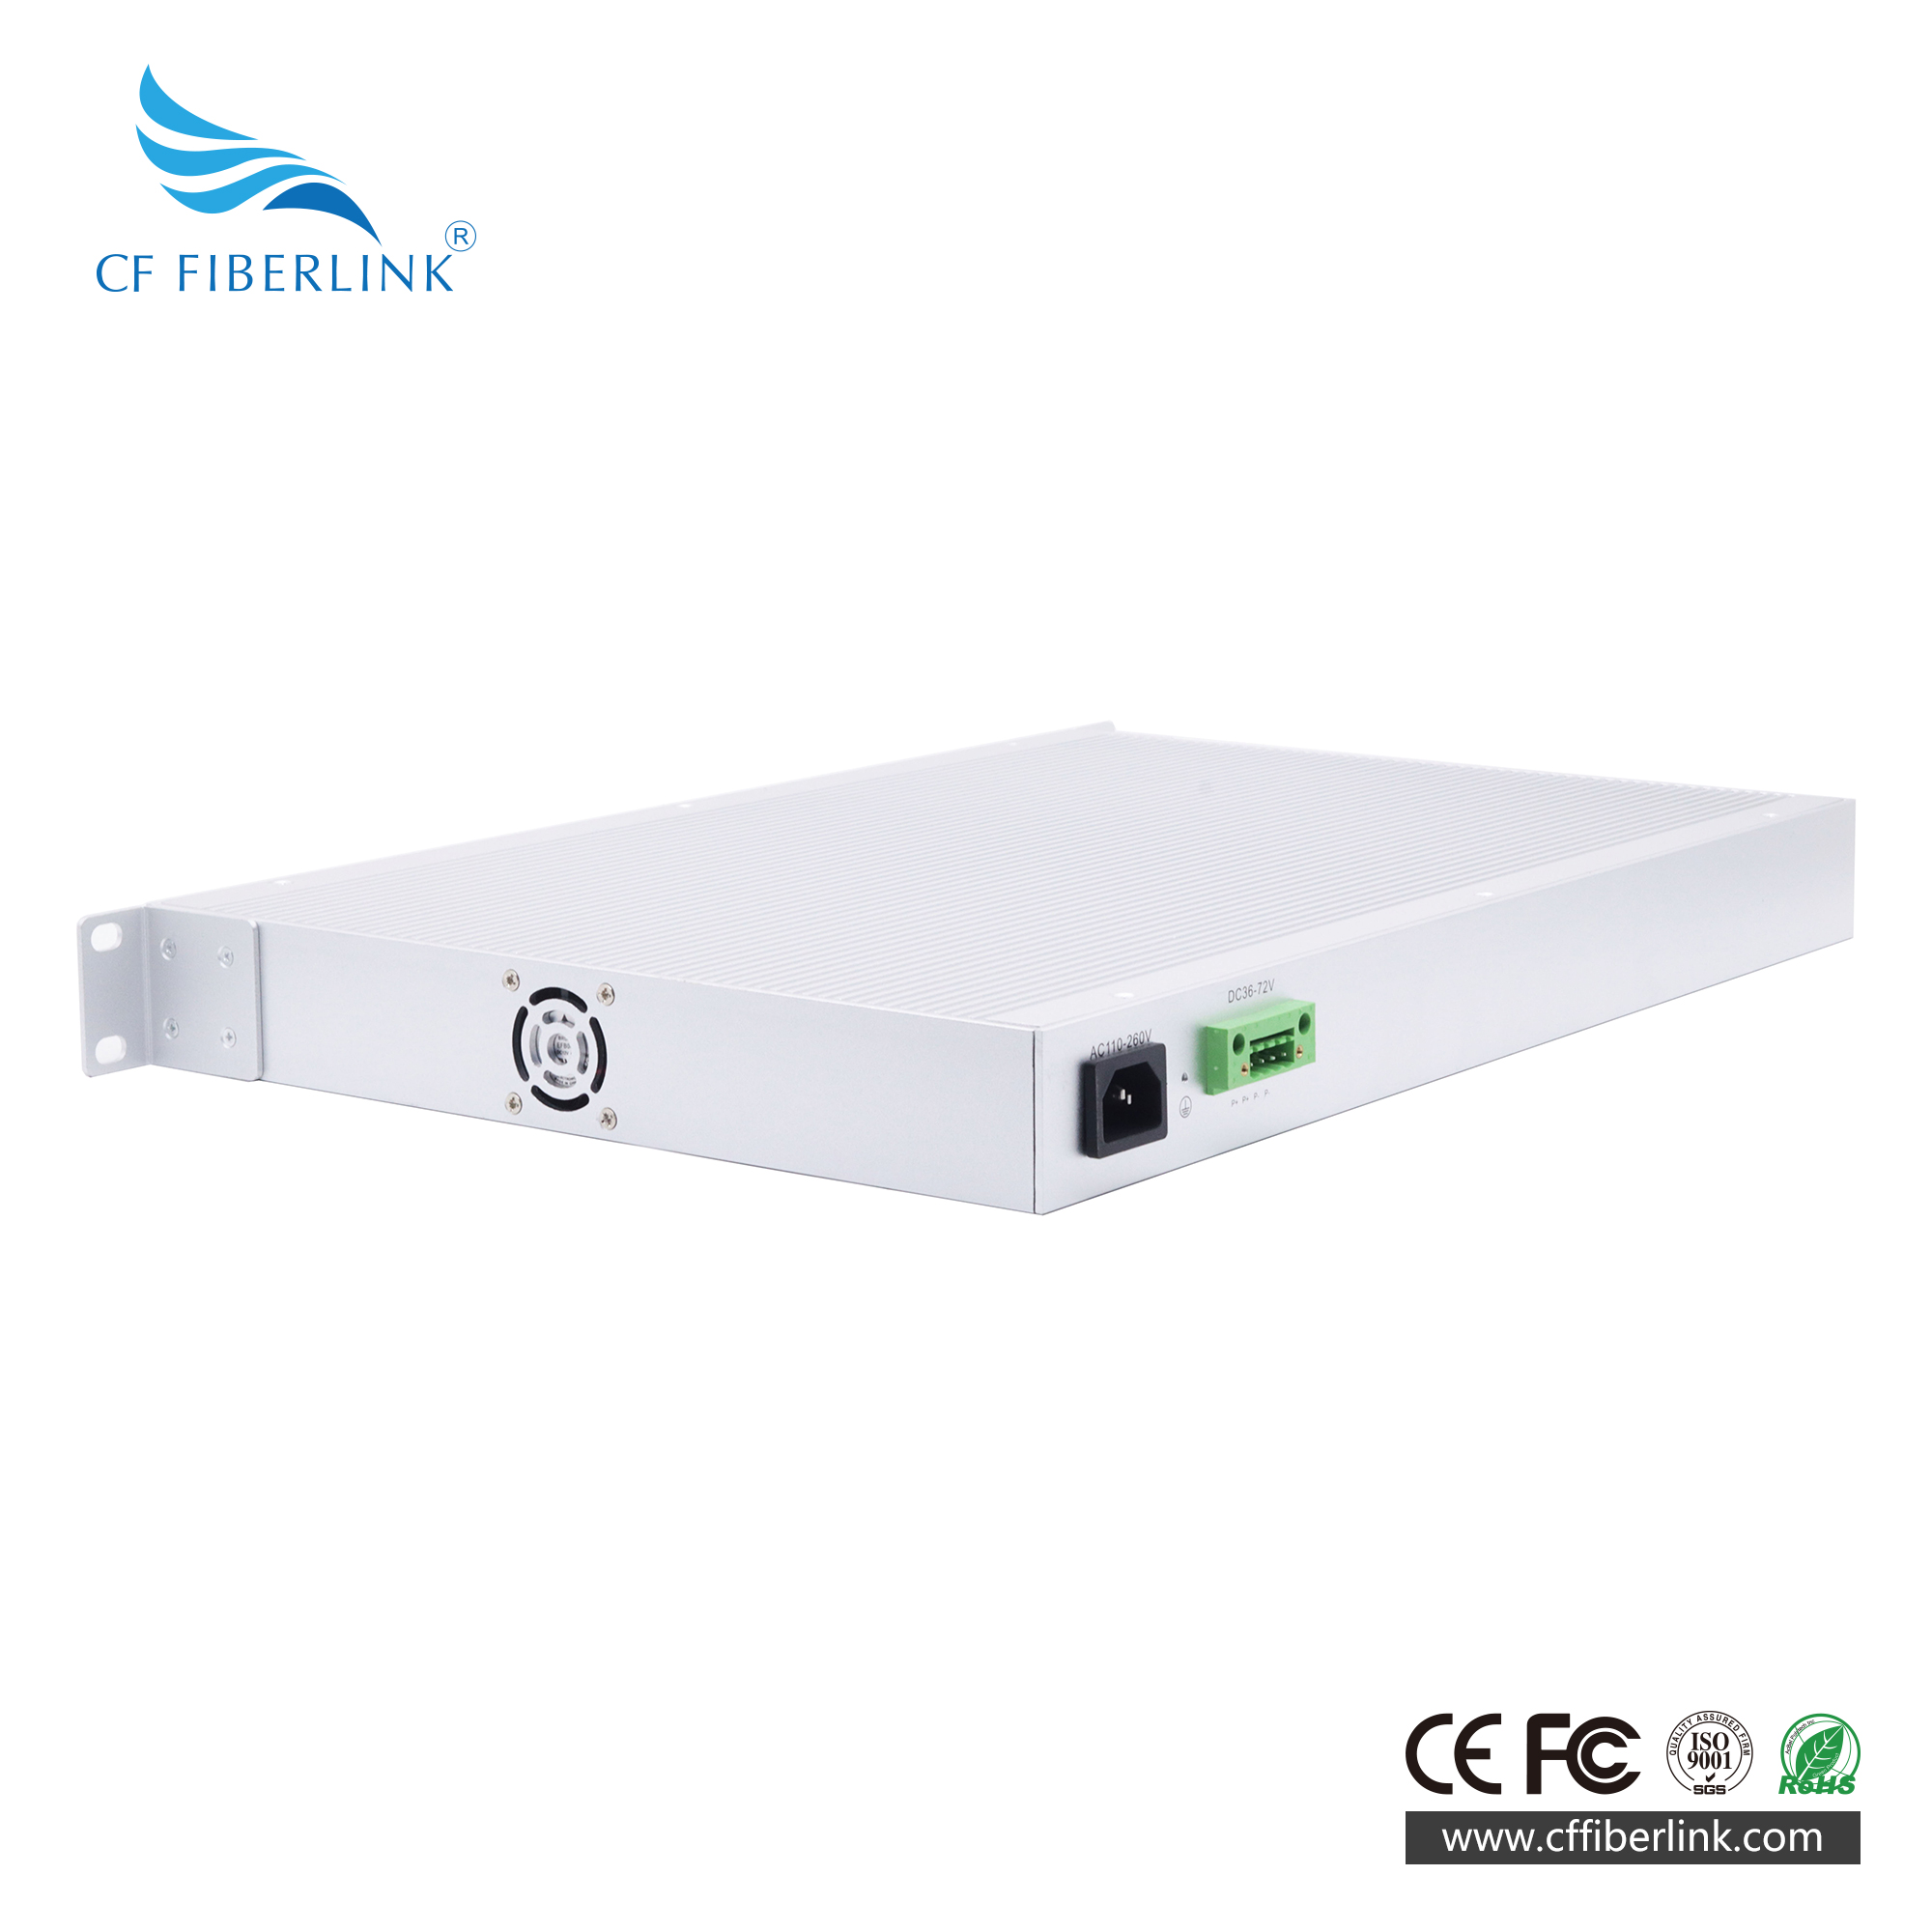 10G Uplink 28-port L3 Managed Industrial Ethernet Switch 24 Gigabit ports